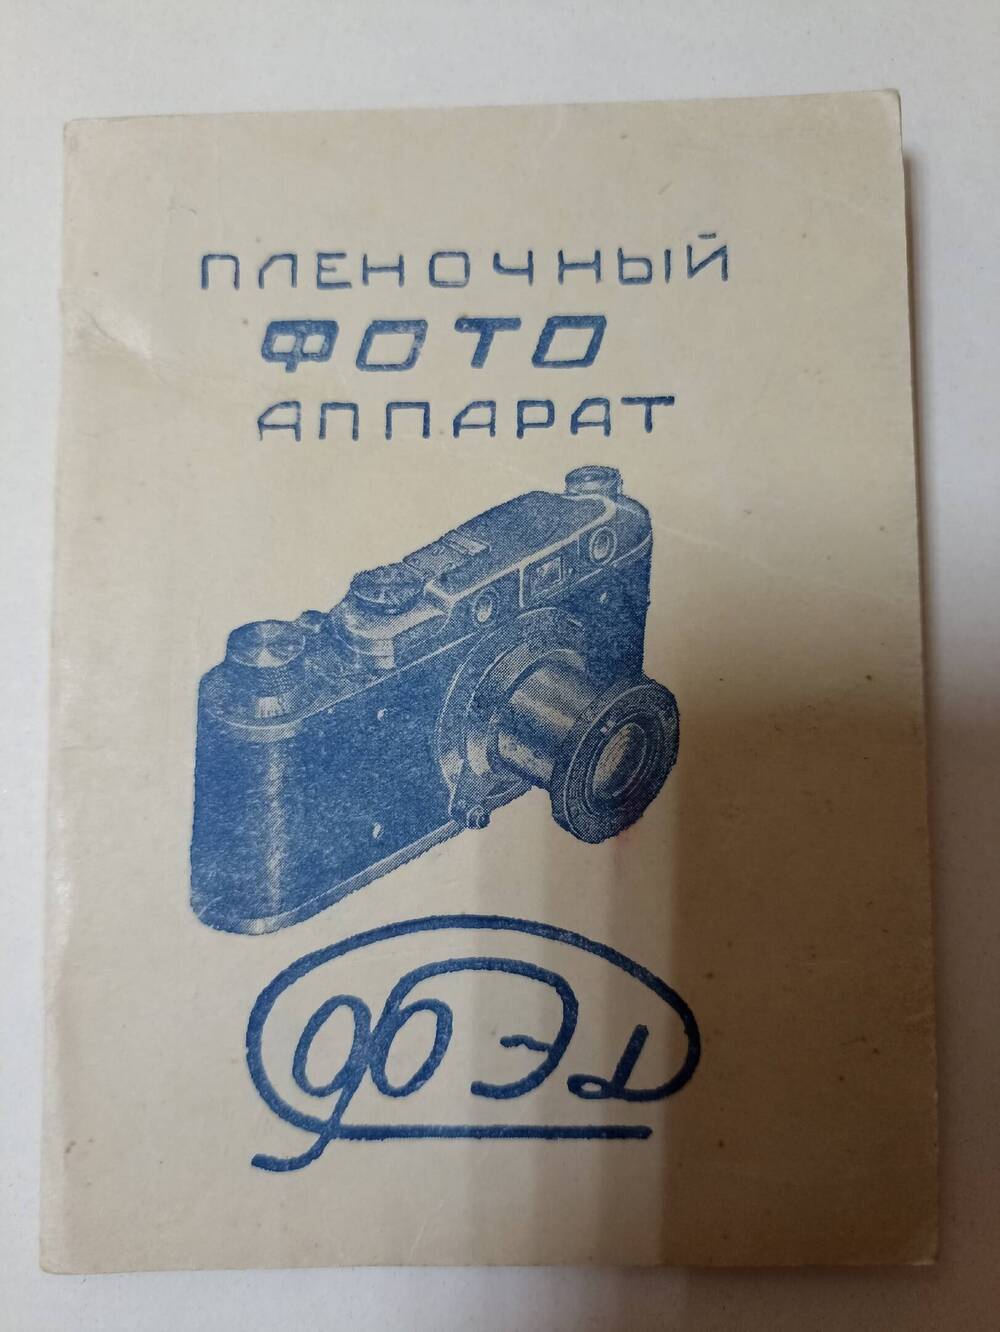 Руководство по эксплуатации к Пленочному фотоаппарату ФЭД , 1949г,